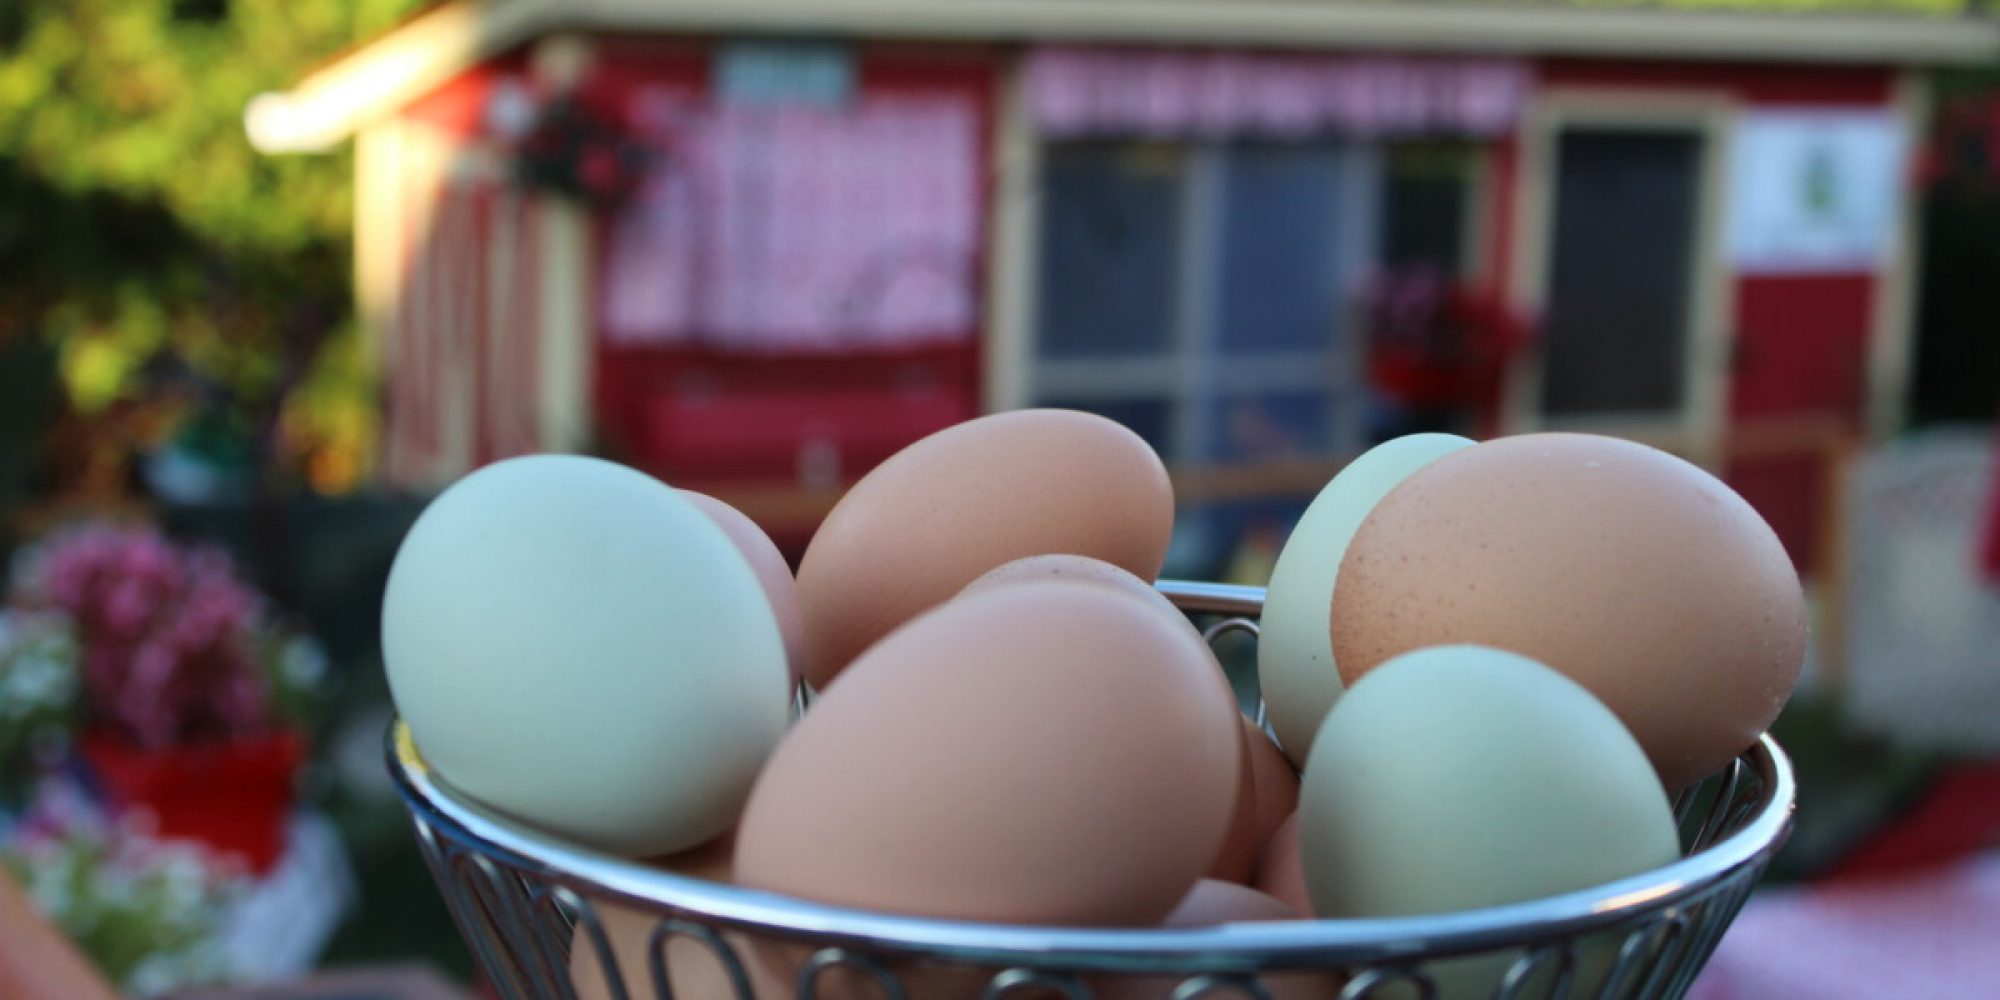 Alimentation : la vérité sur les œufs